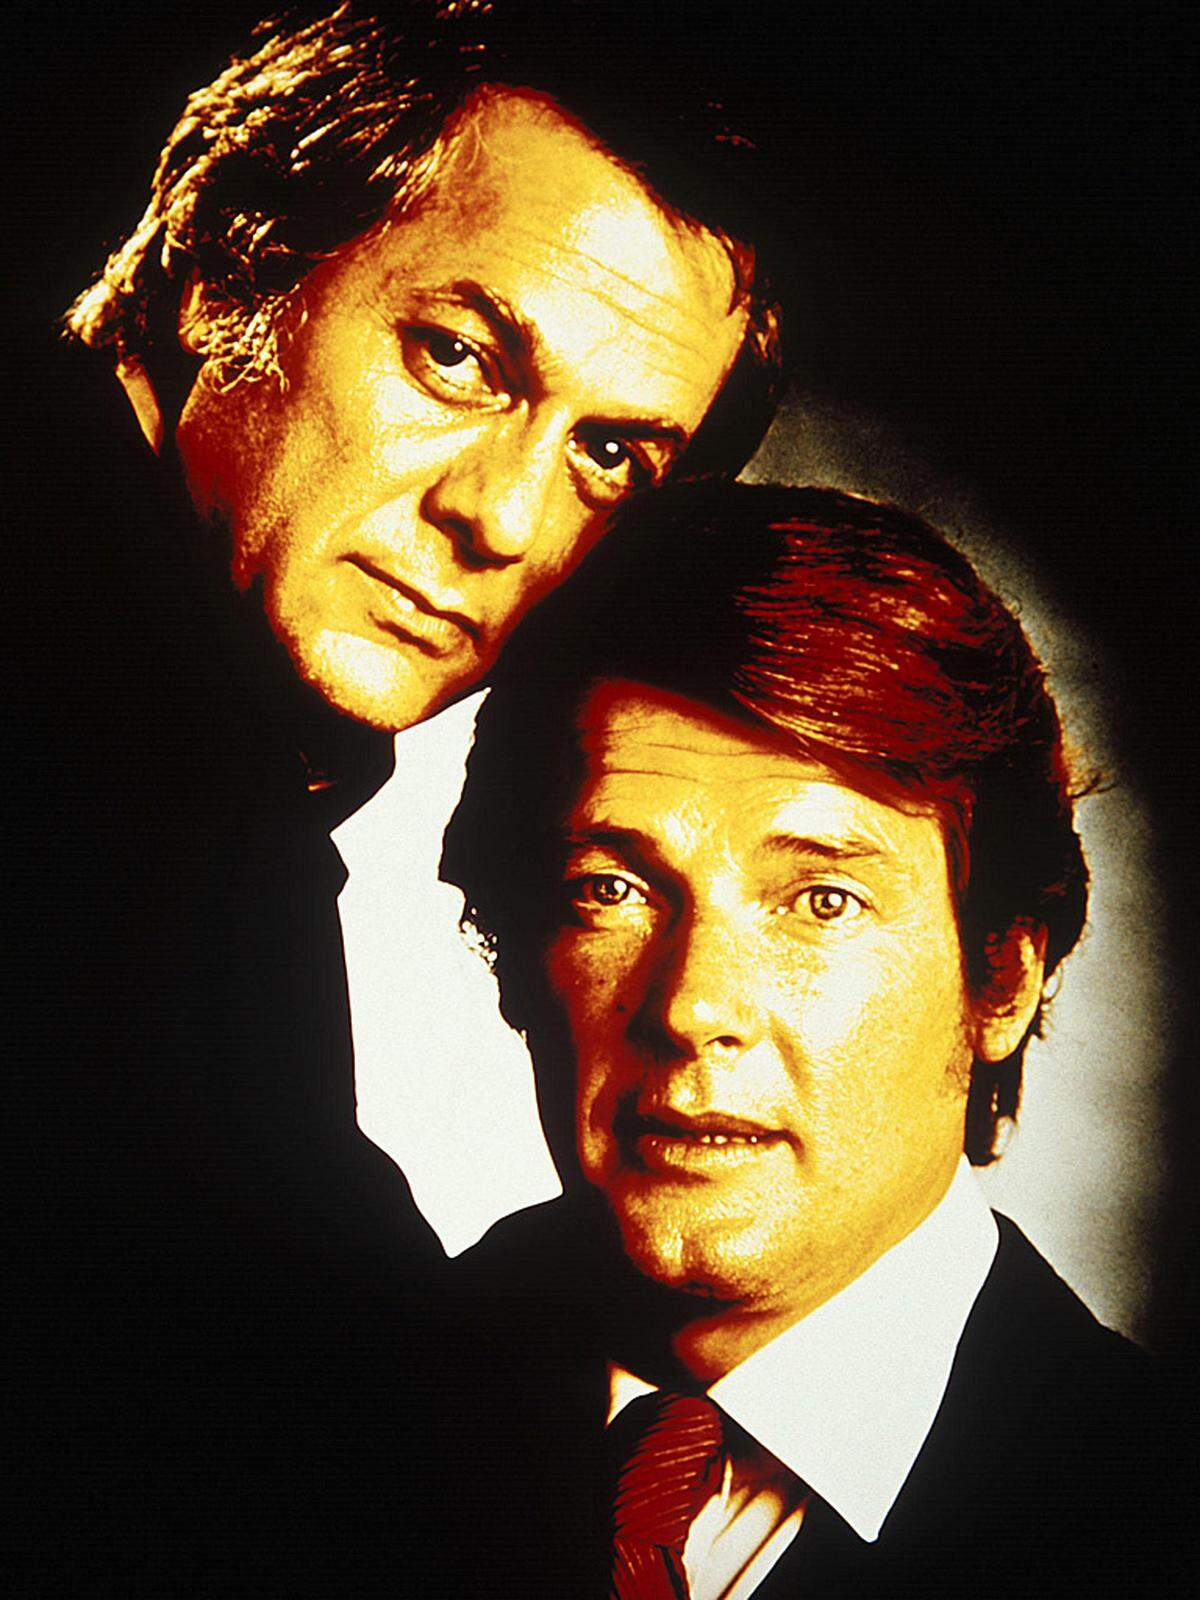 Erfolg feierte er auch im Fernsehen: Die Serie "Die Zwei" mit Curtis und James-Bond-Darsteller Roger Moore wurde Anfang der 70er Jahre zum Kult.